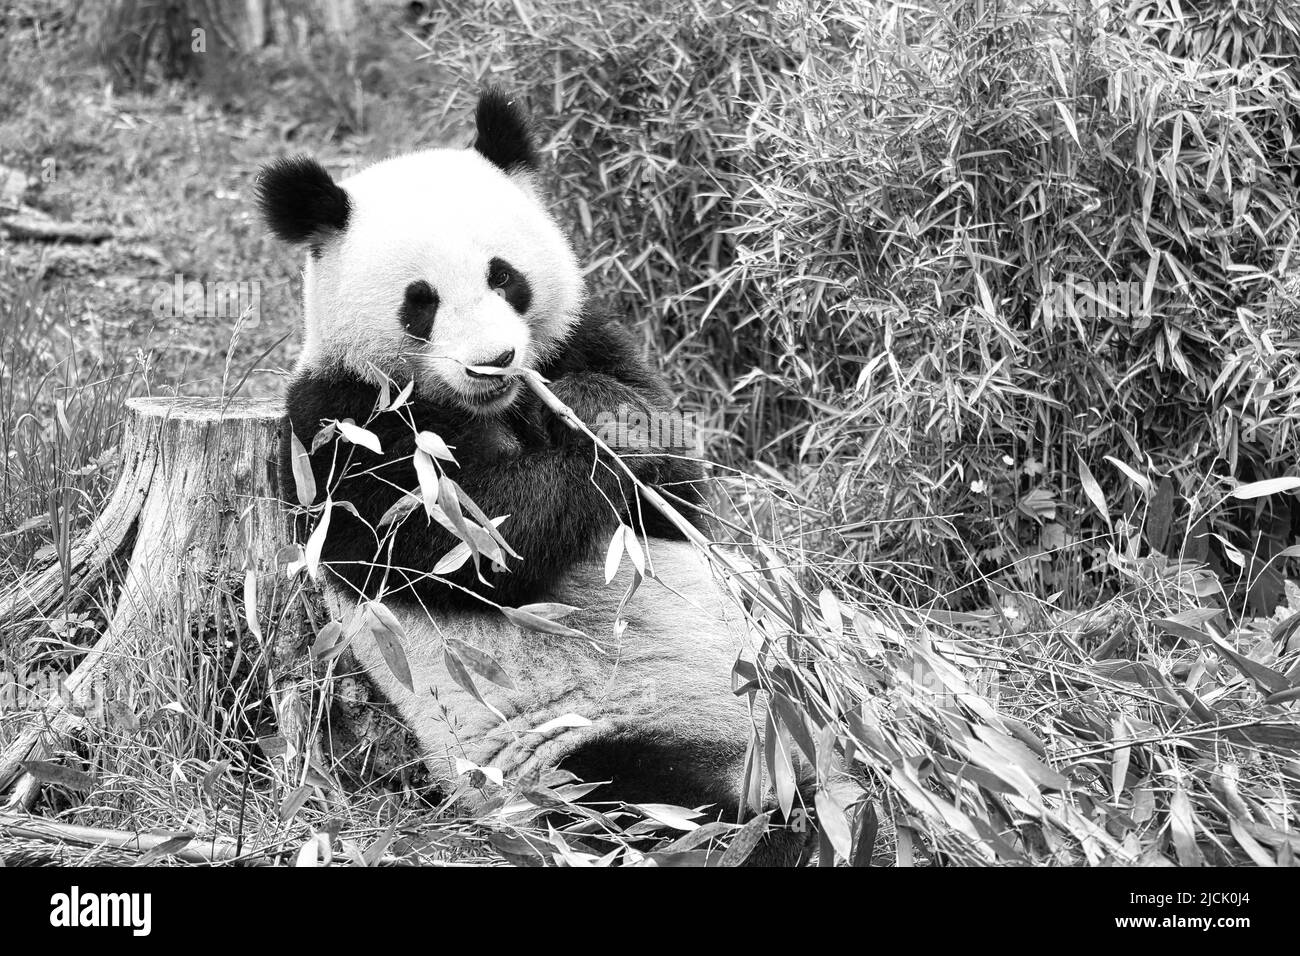 panda grande in bianco e nero, seduto mangiare bambù. Specie in pericolo. Mammifero bianco e nero che assomiglia ad un orsacchiotto. Foto profonda di una rara bea Foto Stock